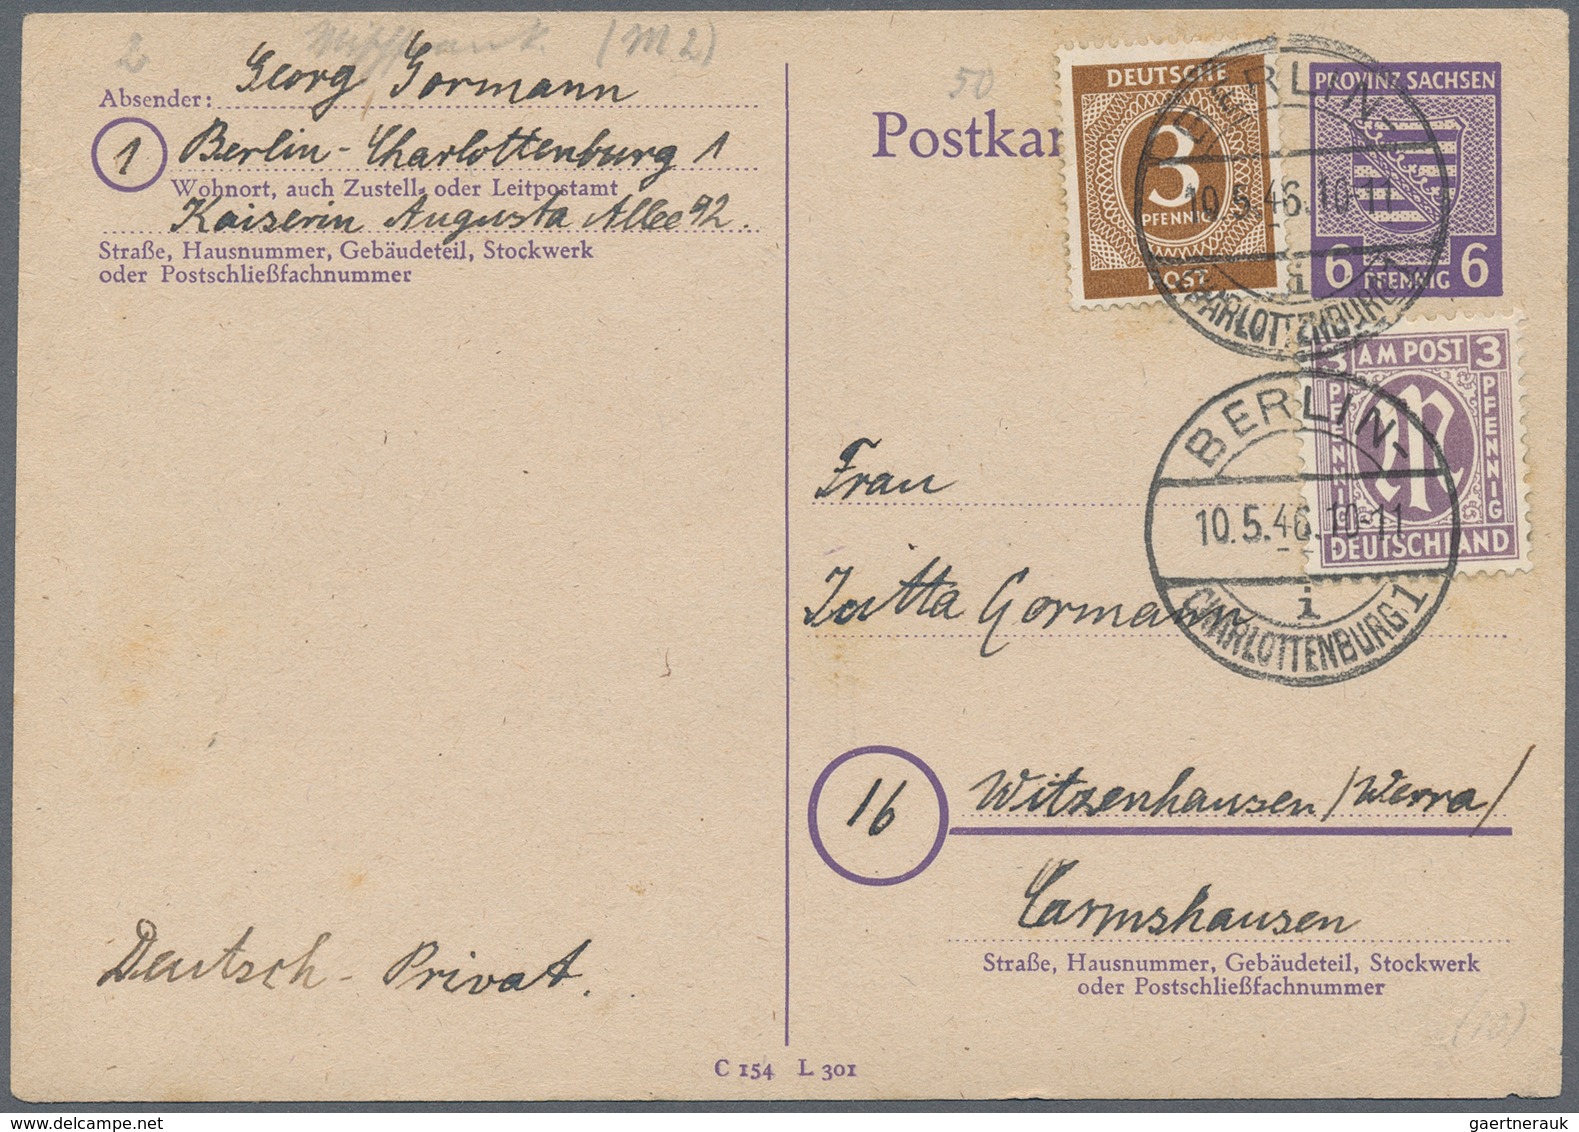 32456 Berlin - Vorläufer: 1945/53 (ca.), Schöner Posten von ca. 40 Nachkriegs-Belegen BERLIN, meist ehemal